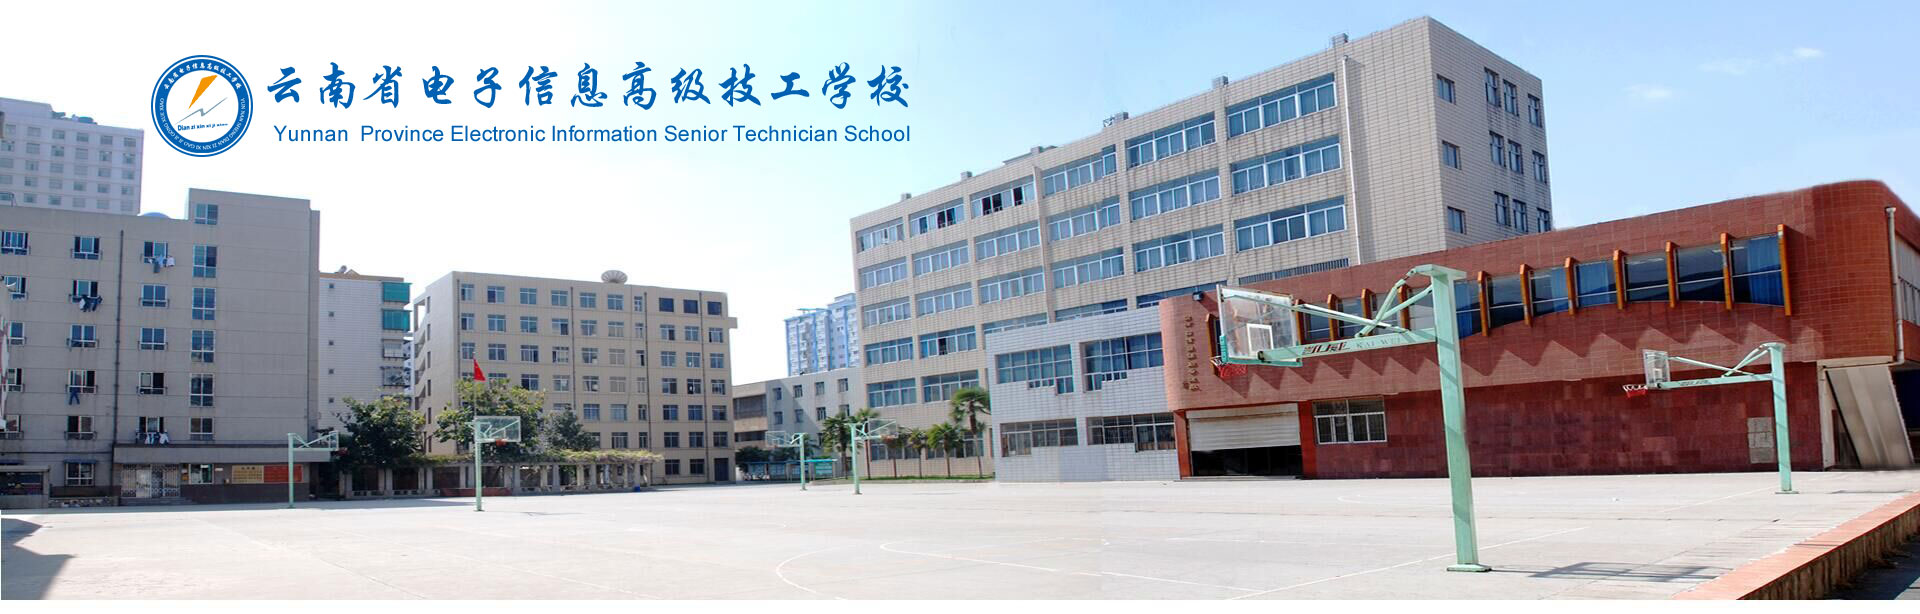 云南省电子信息高级技工技术学校浅谈技术的职责分工